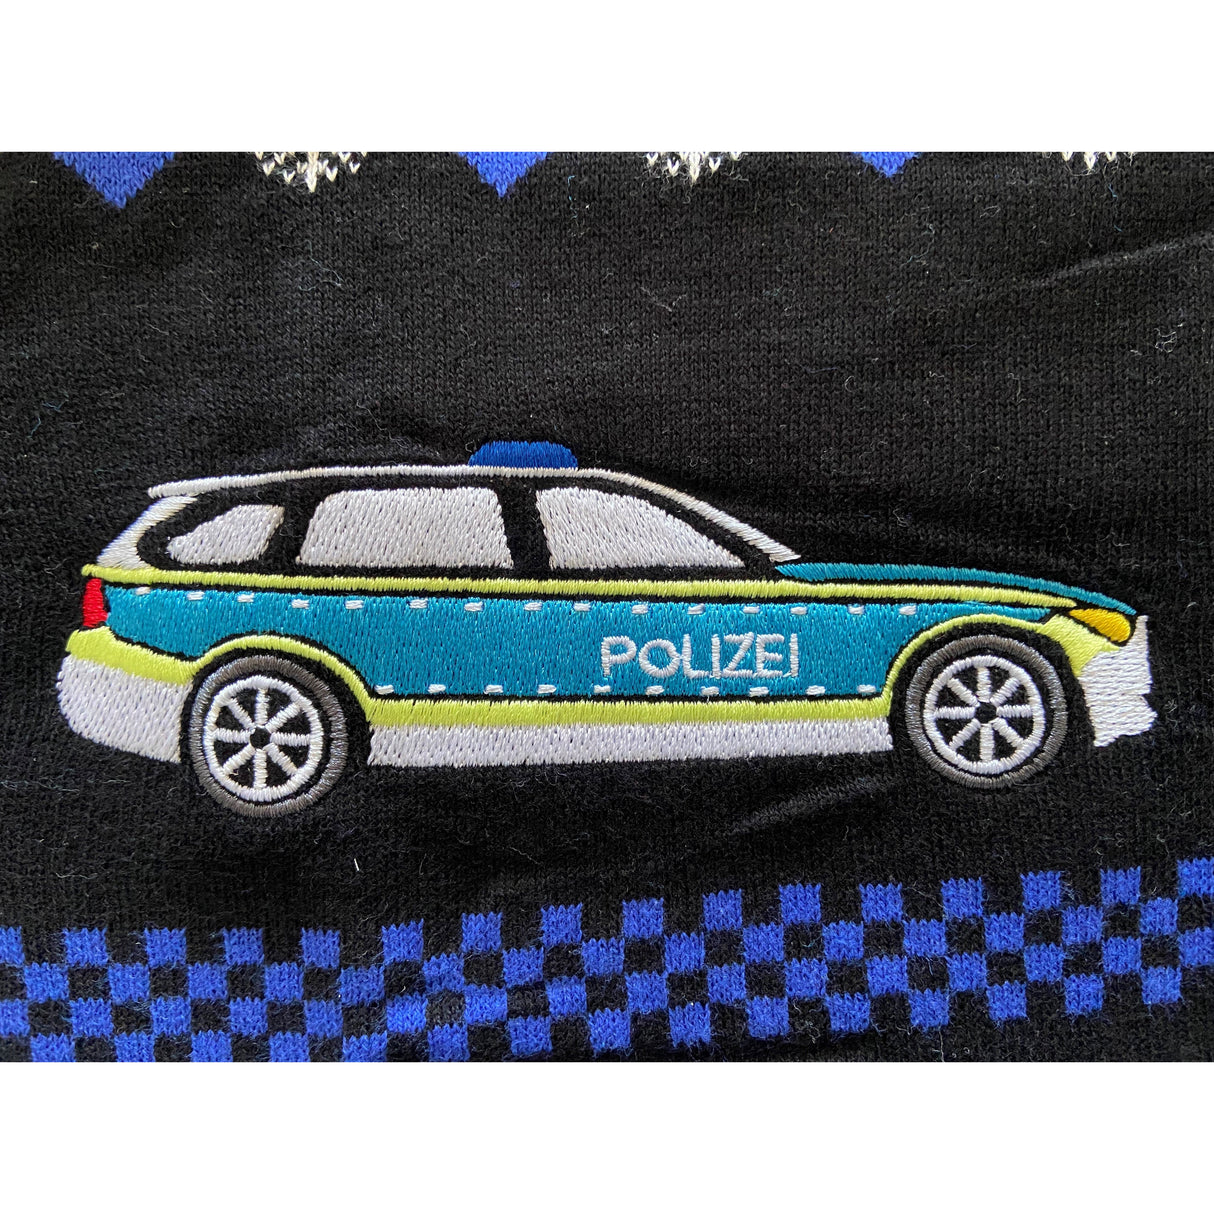 Police Navidad Xmas Sweater